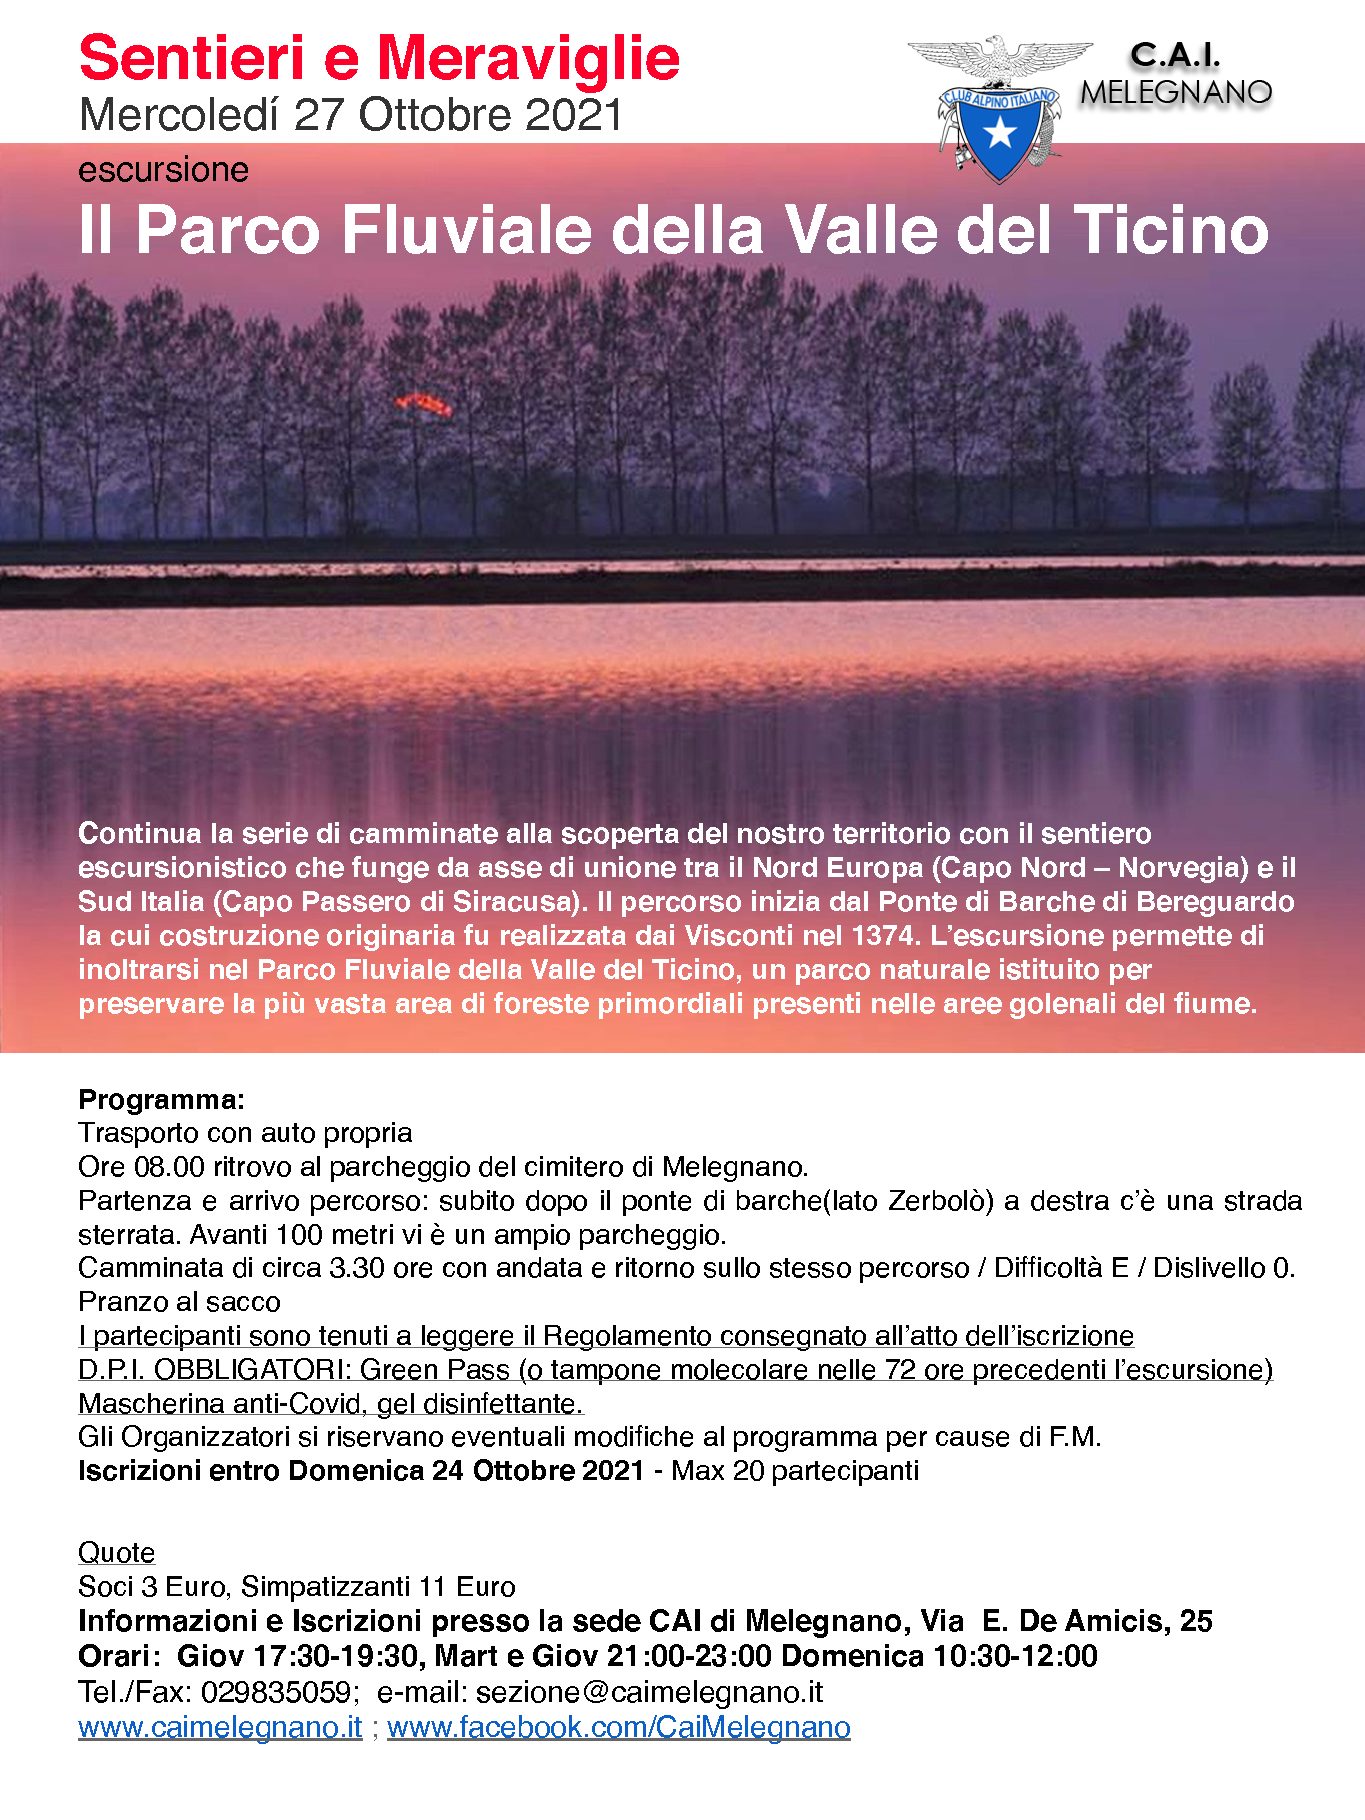 Escursione al parco fluviale del Ticino – 27 ottobre 2021